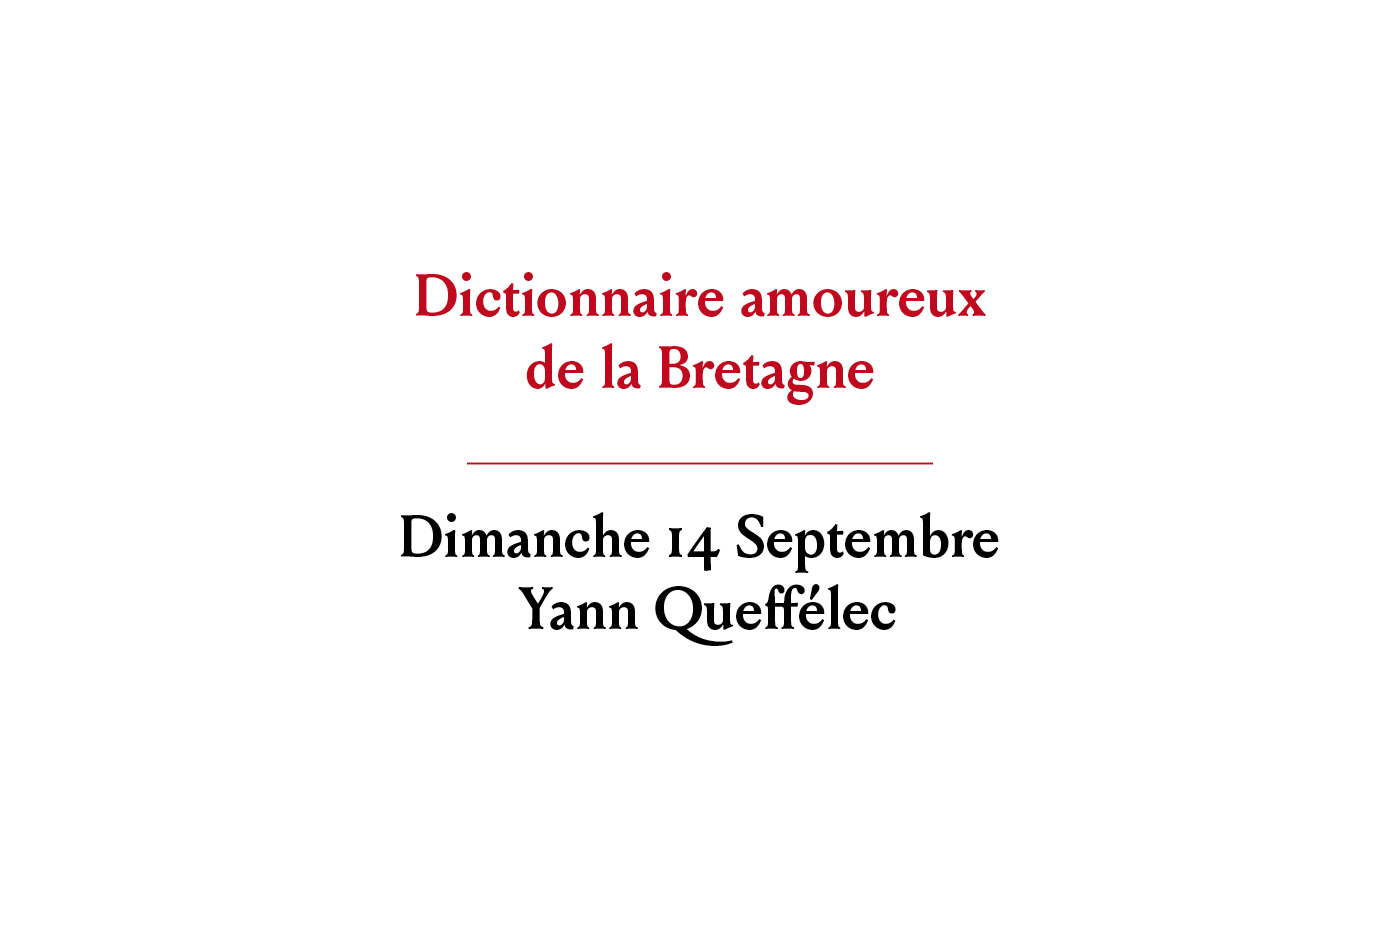 Rencontre avec Yann Queffélec